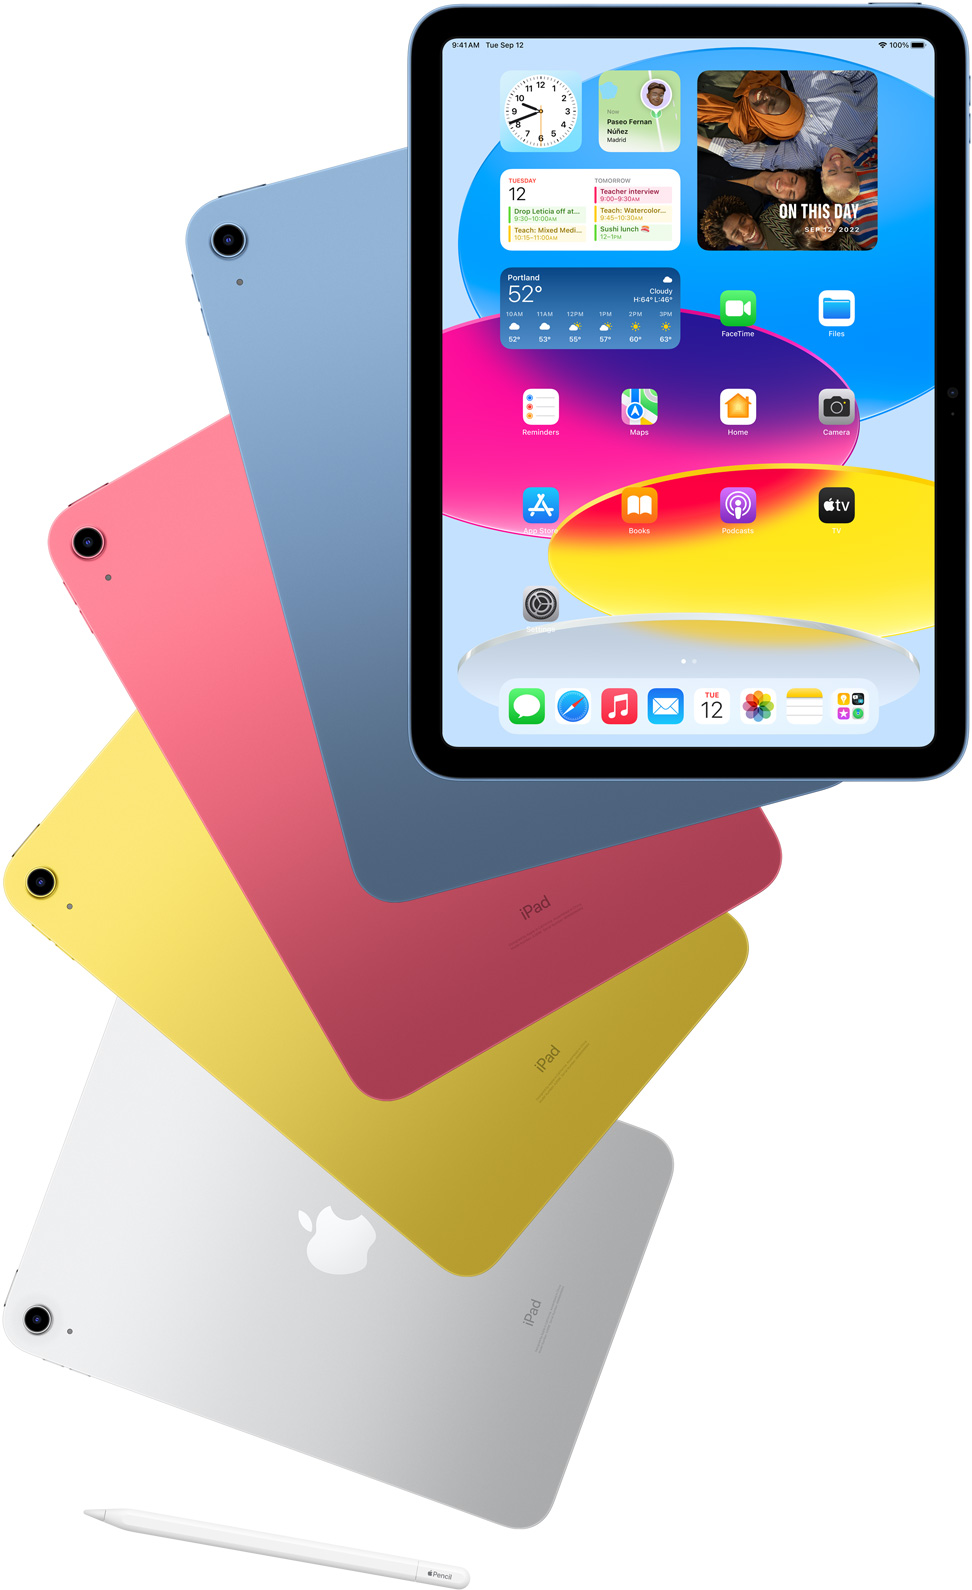 Pohled zepředu na iPad se zobrazenou plochou a zezadu na modrý, růžový, žlutý a stříbrný iPad, které vystupují zpoza něj. Poblíž rozprostřených modelů iPadu je položený Apple Pencil.